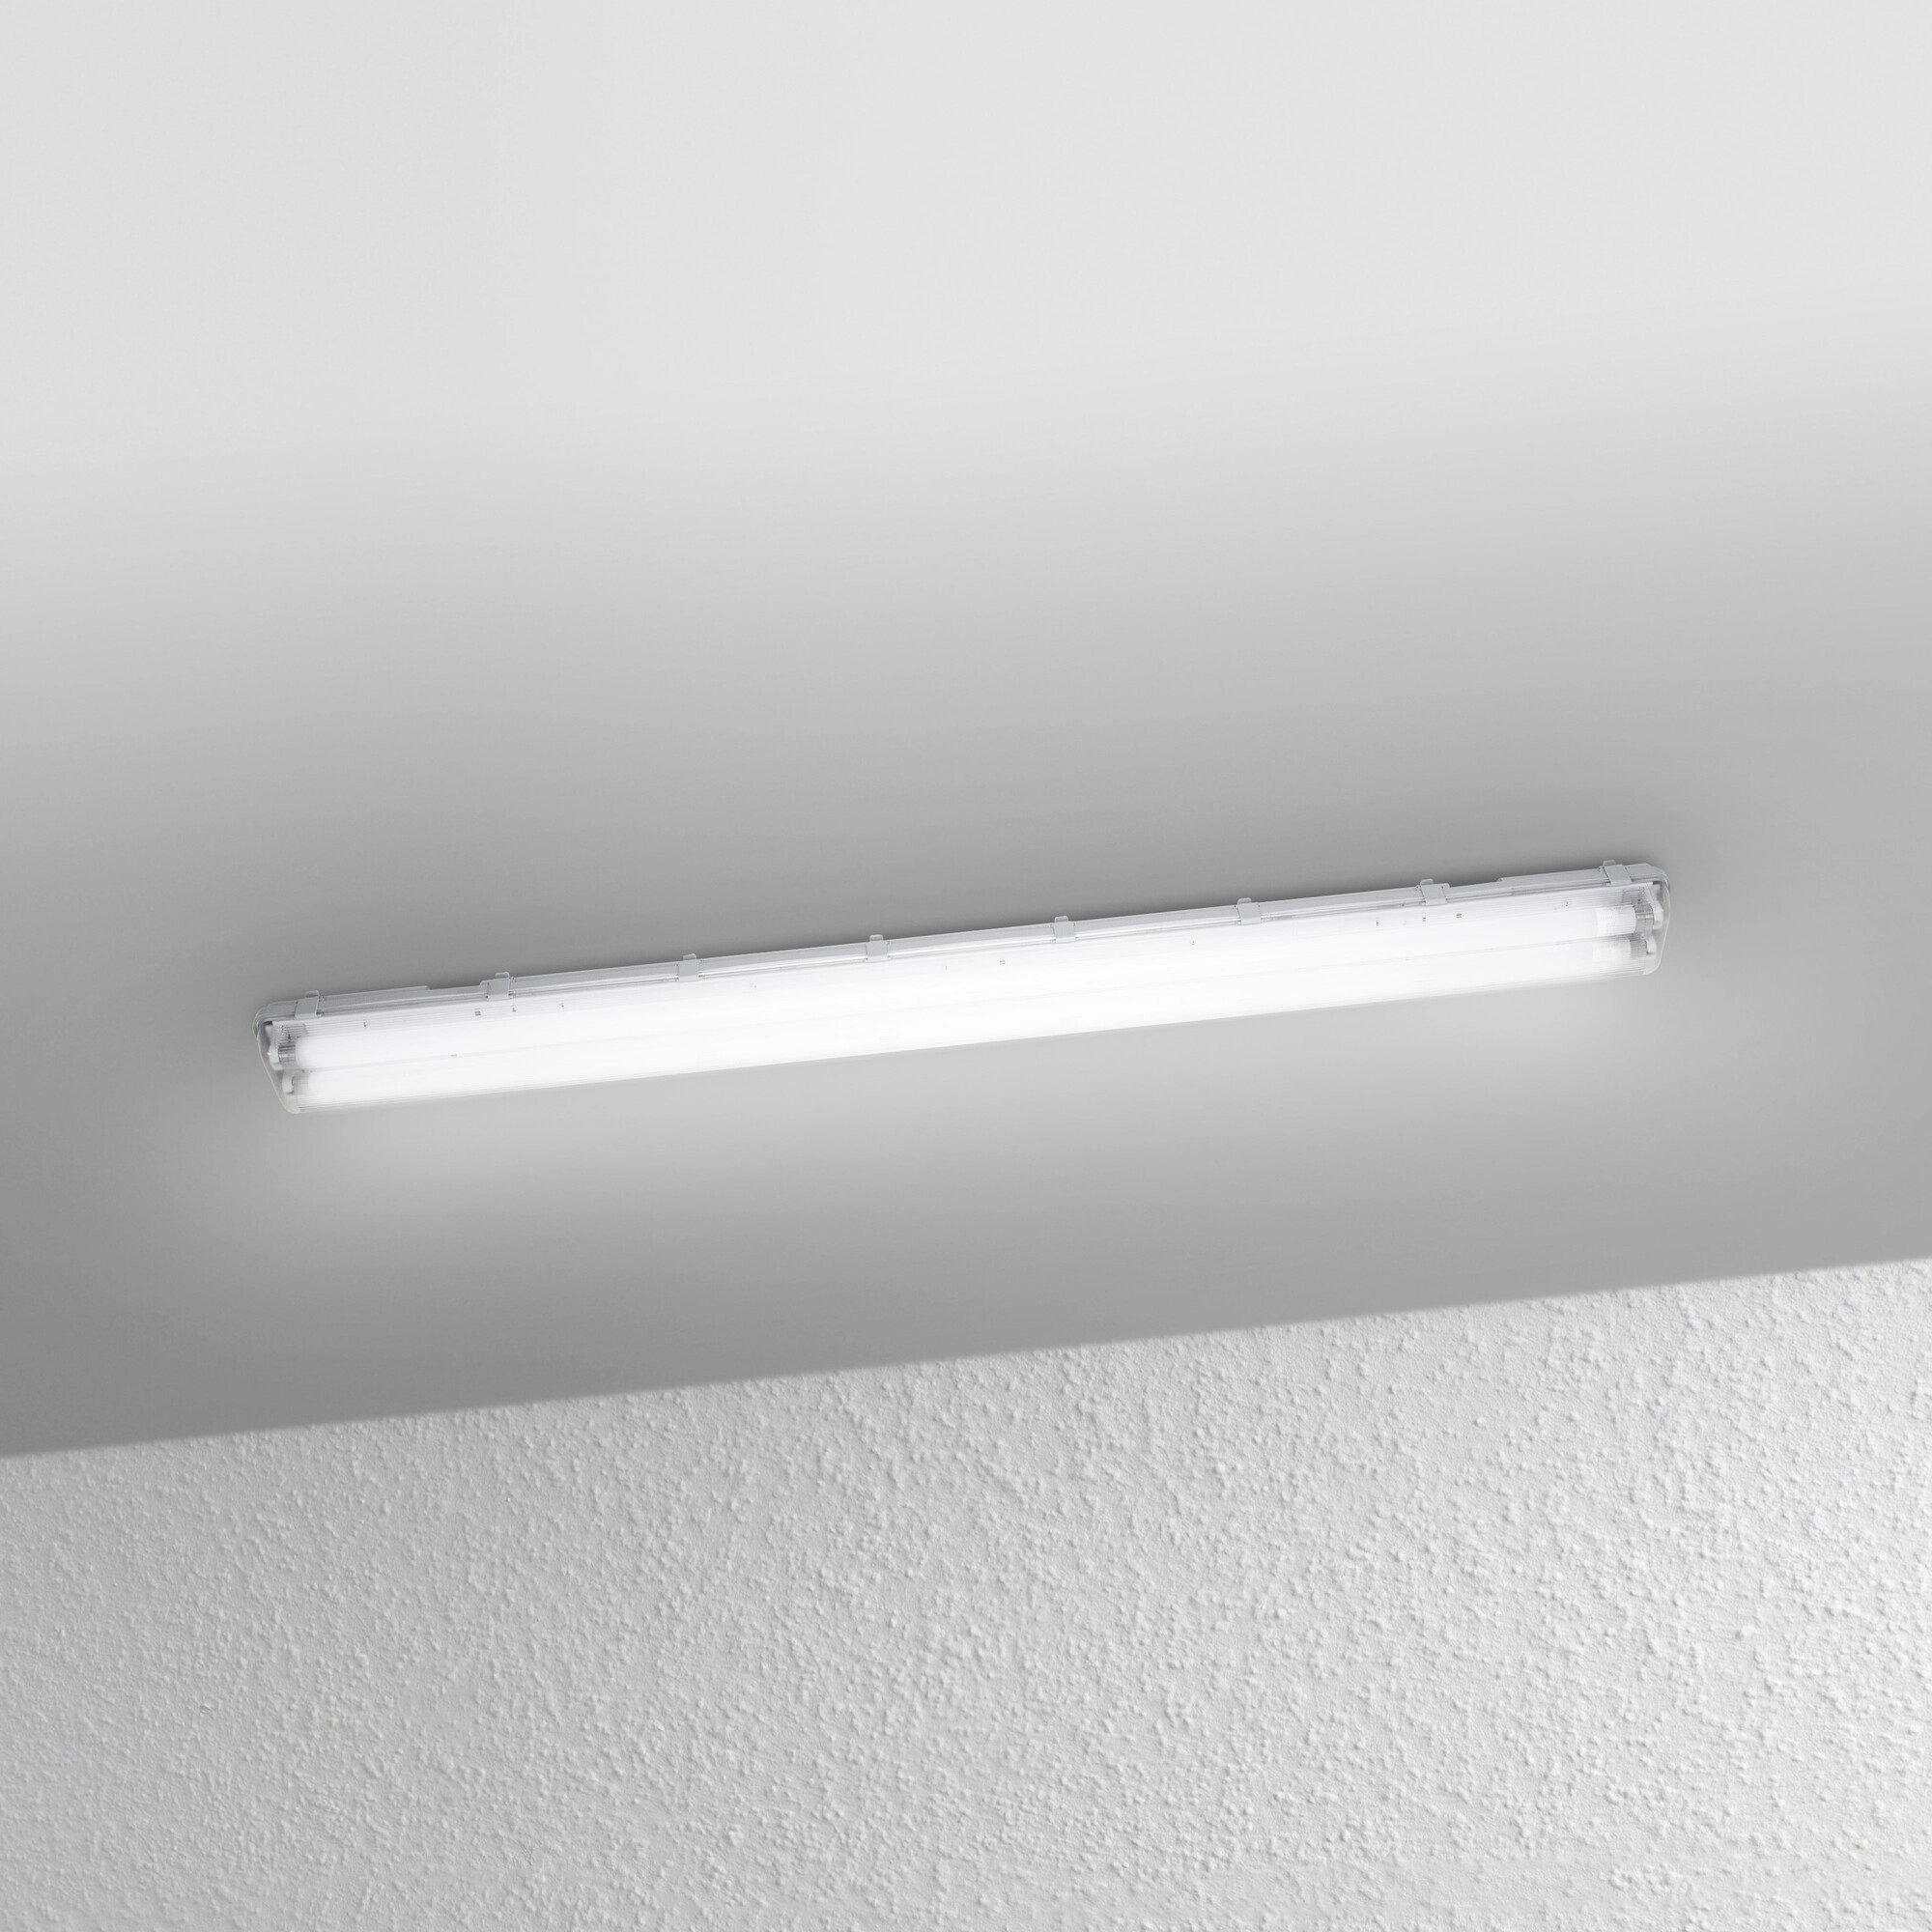 Lampe LED pour locaux humides Blanc neutre Atelier Plafonnier